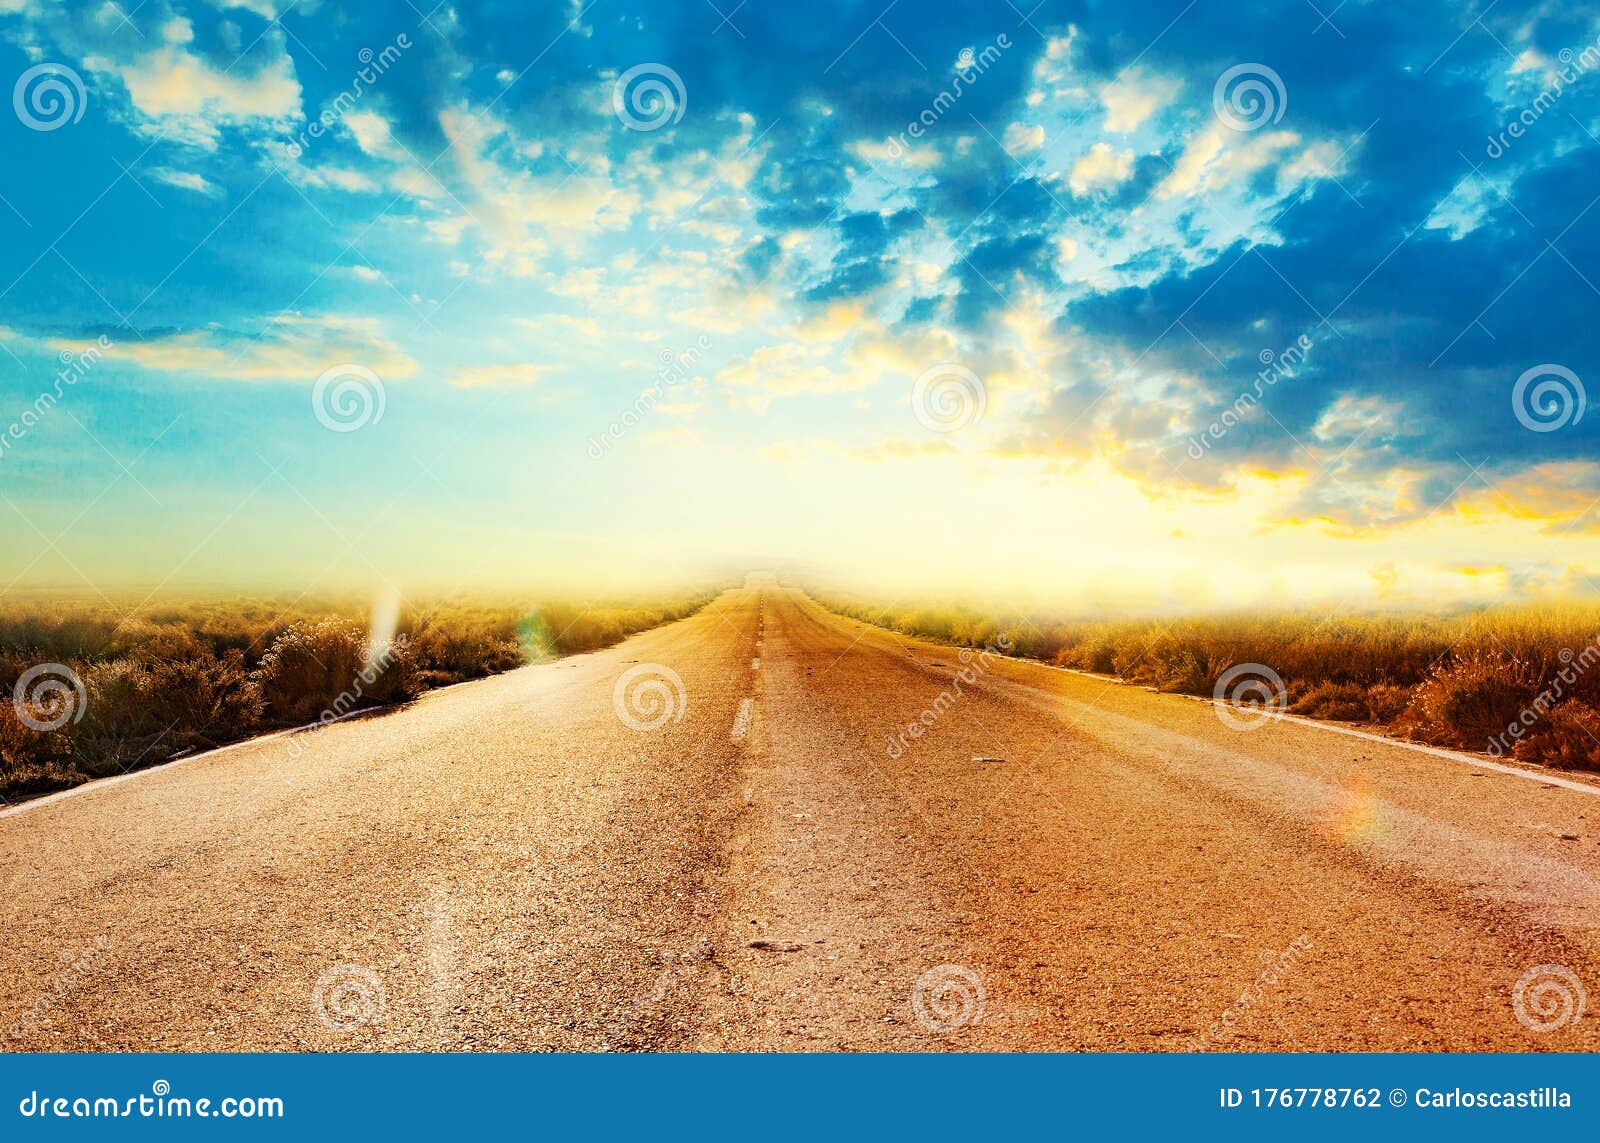 乡村道路背景与色彩缤纷的夕阳景观库存照片 图片包括有沙漠 室外 道路 驱动器 目的地 国家 地区